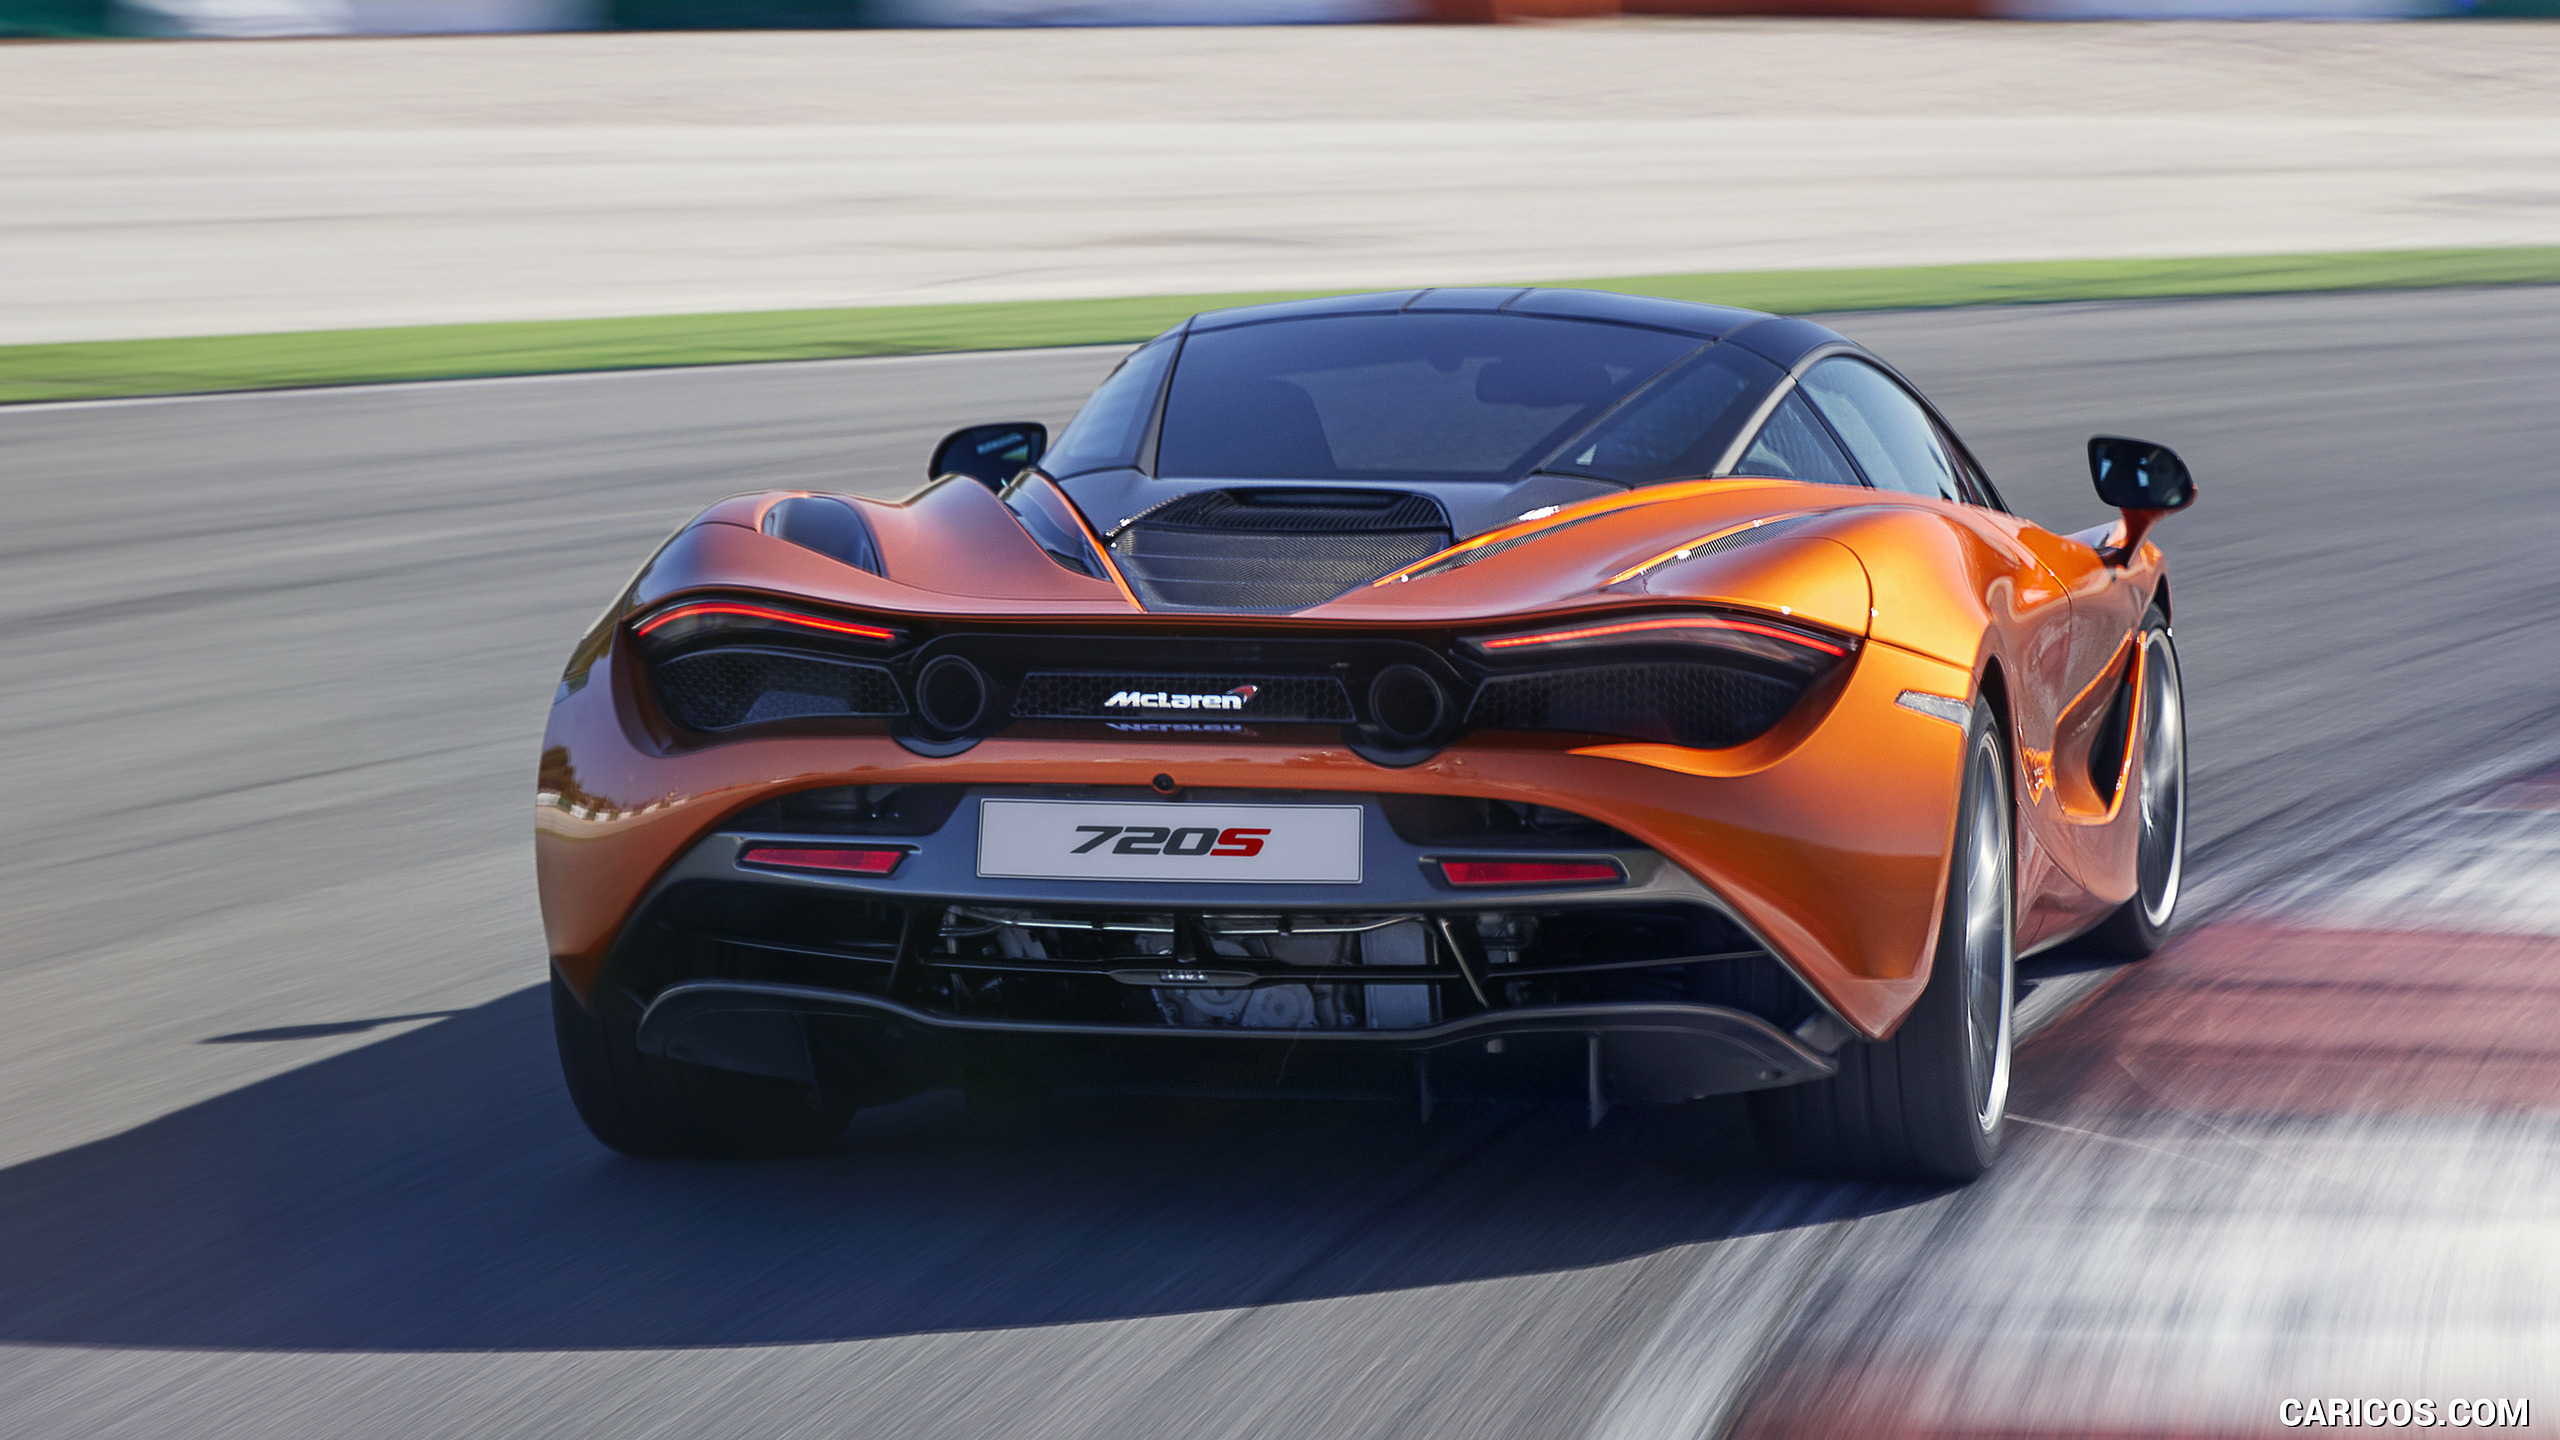 2018 McLaren 720S - Rear, #3 of 95